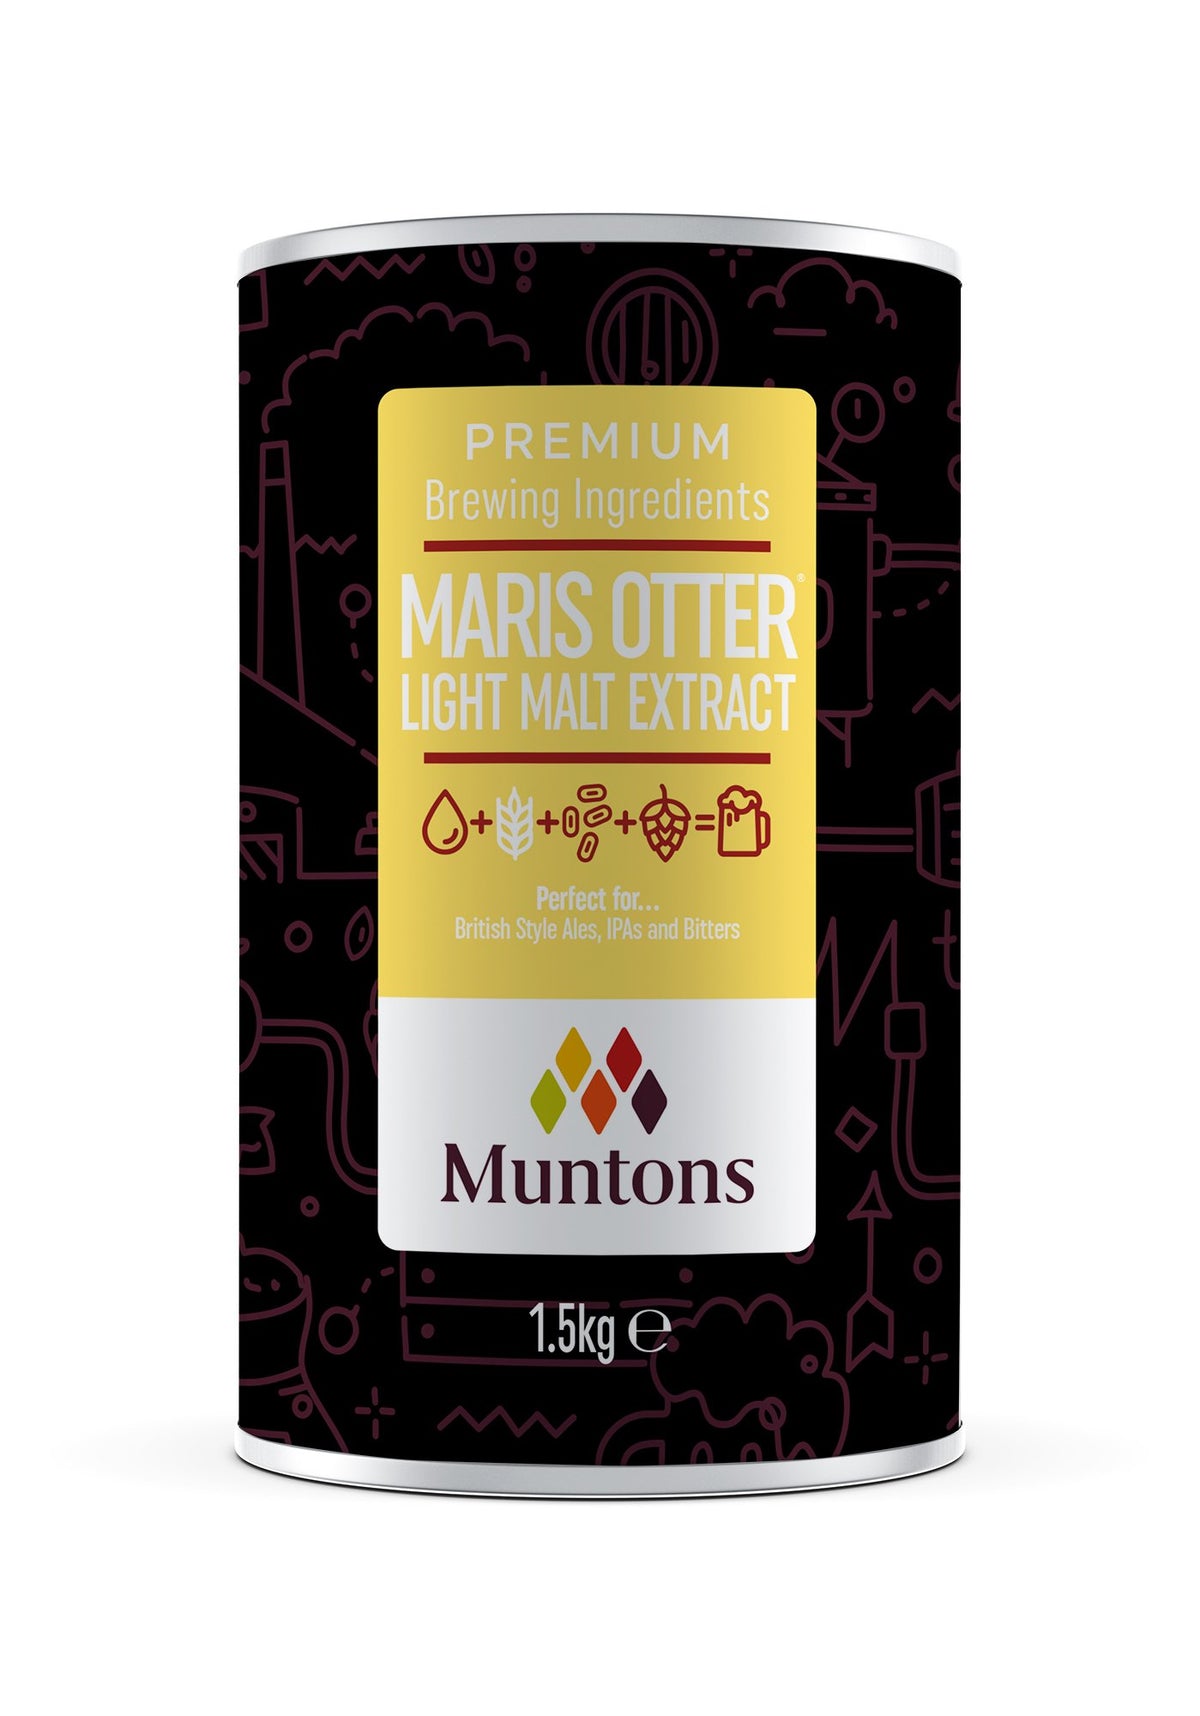 Muntons Maris Otter Light Extract 1.5kg - All Things Fermented | Home Brew Shop NZ | Supplies | Equipment